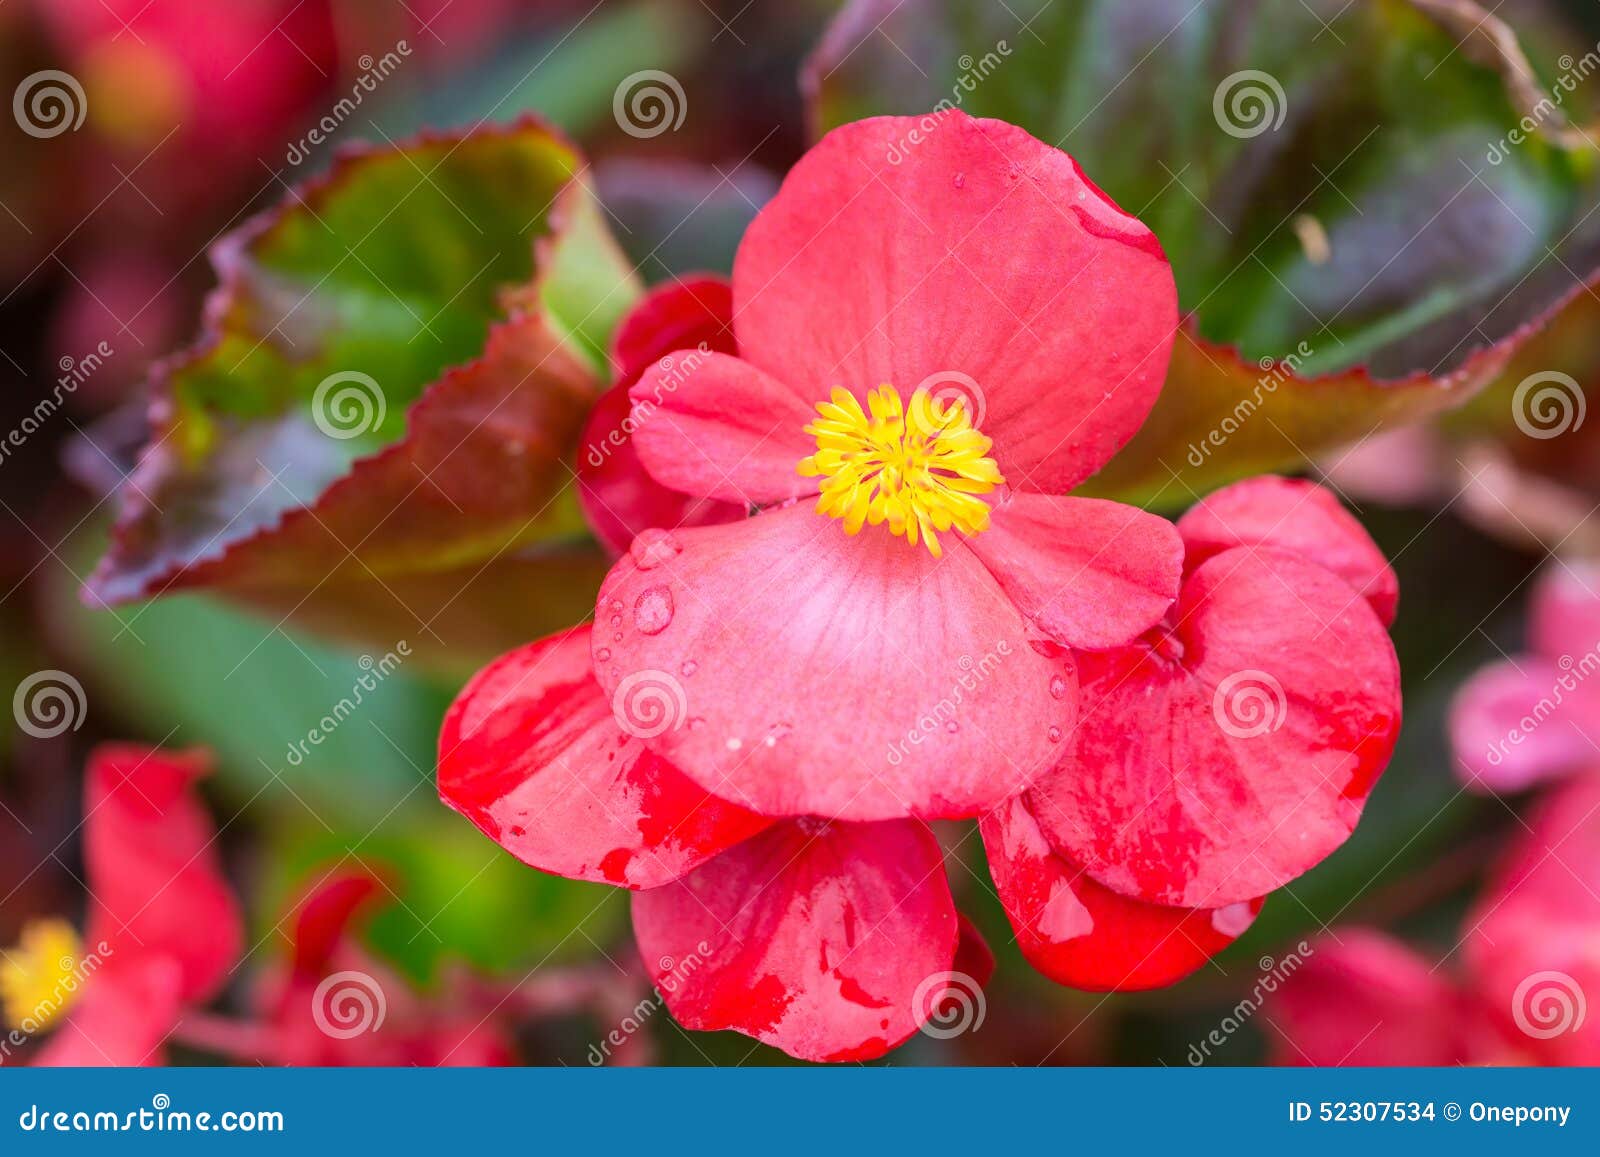 Begonia de cera foto de archivo. Imagen de flor, anual - 52307534